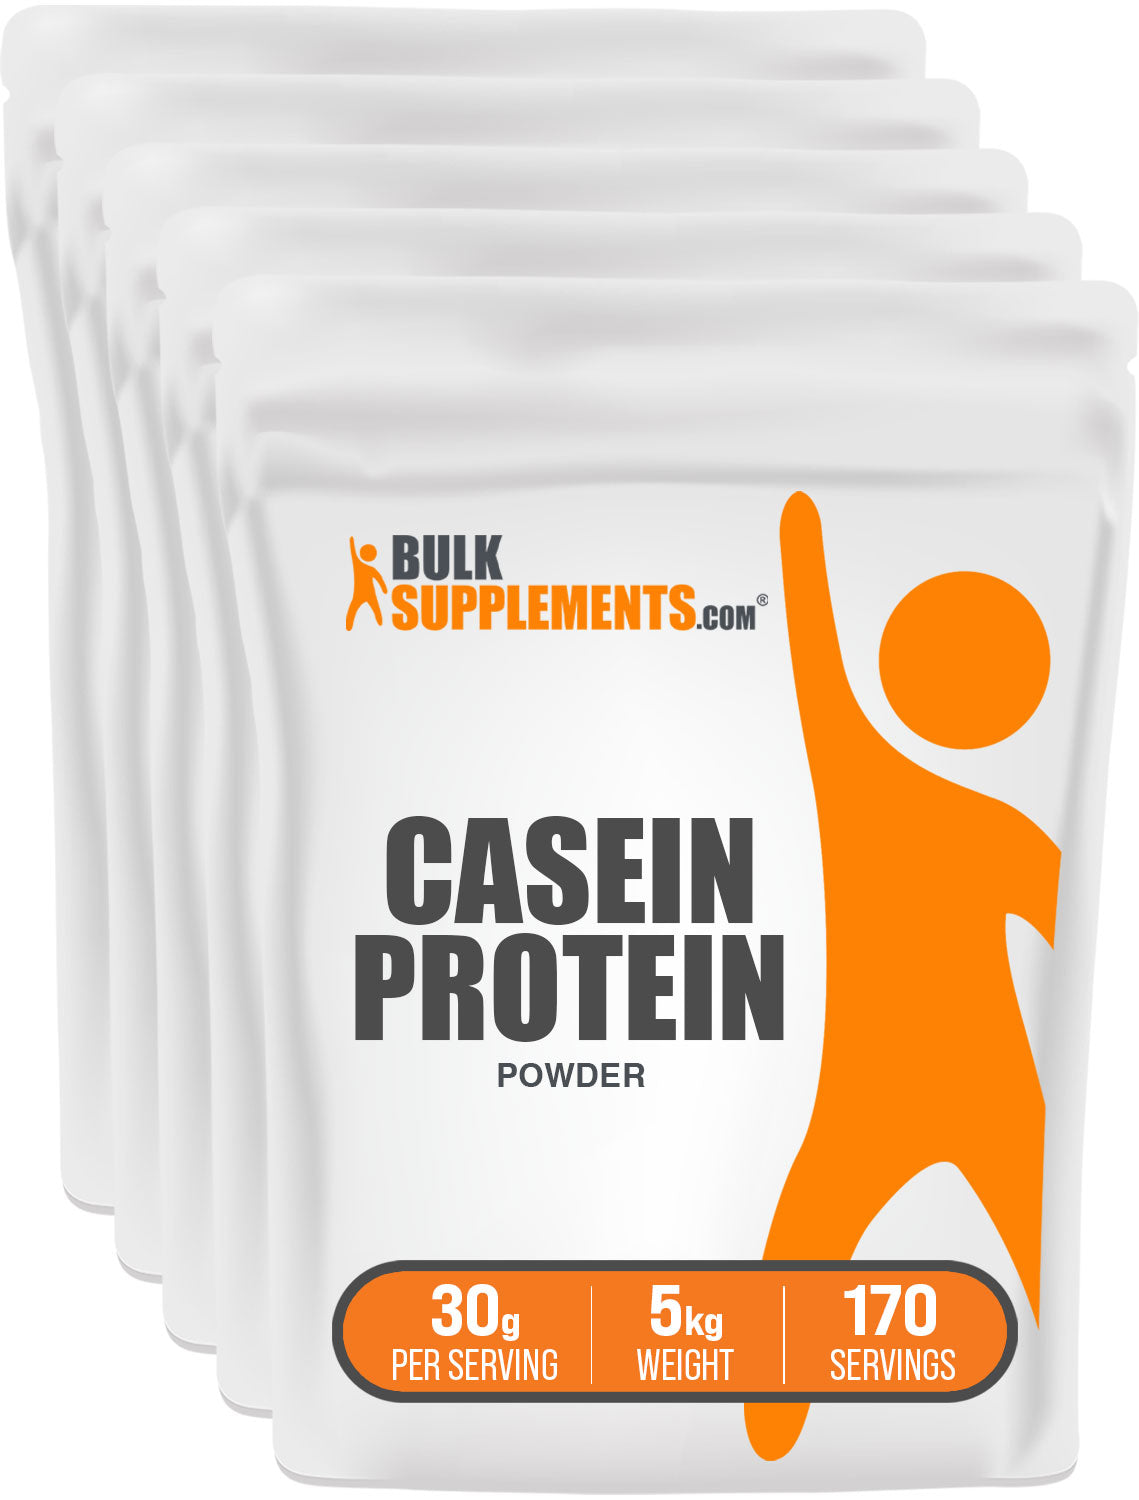 5kg casein protein powder